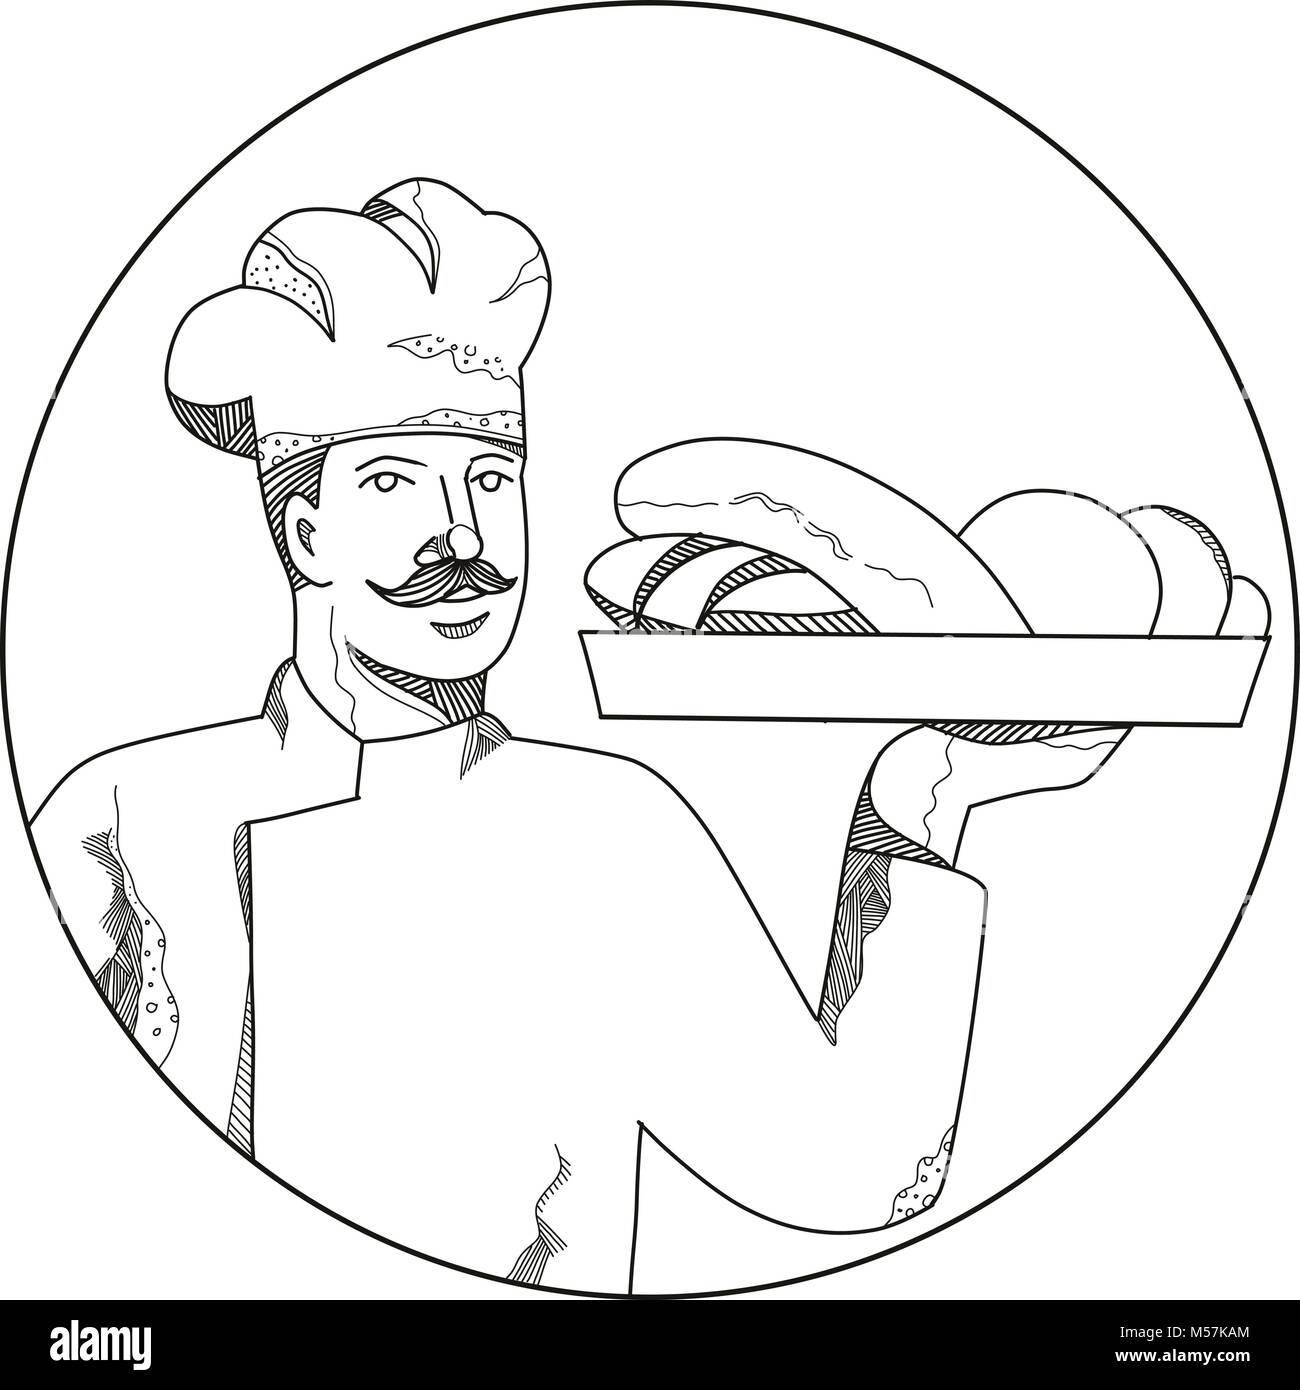 Doodle art illustration d'un boulanger ou pâtissier tenant une assiette de pain mis à l'intérieur du cercle fait en style de mandala. Illustration de Vecteur